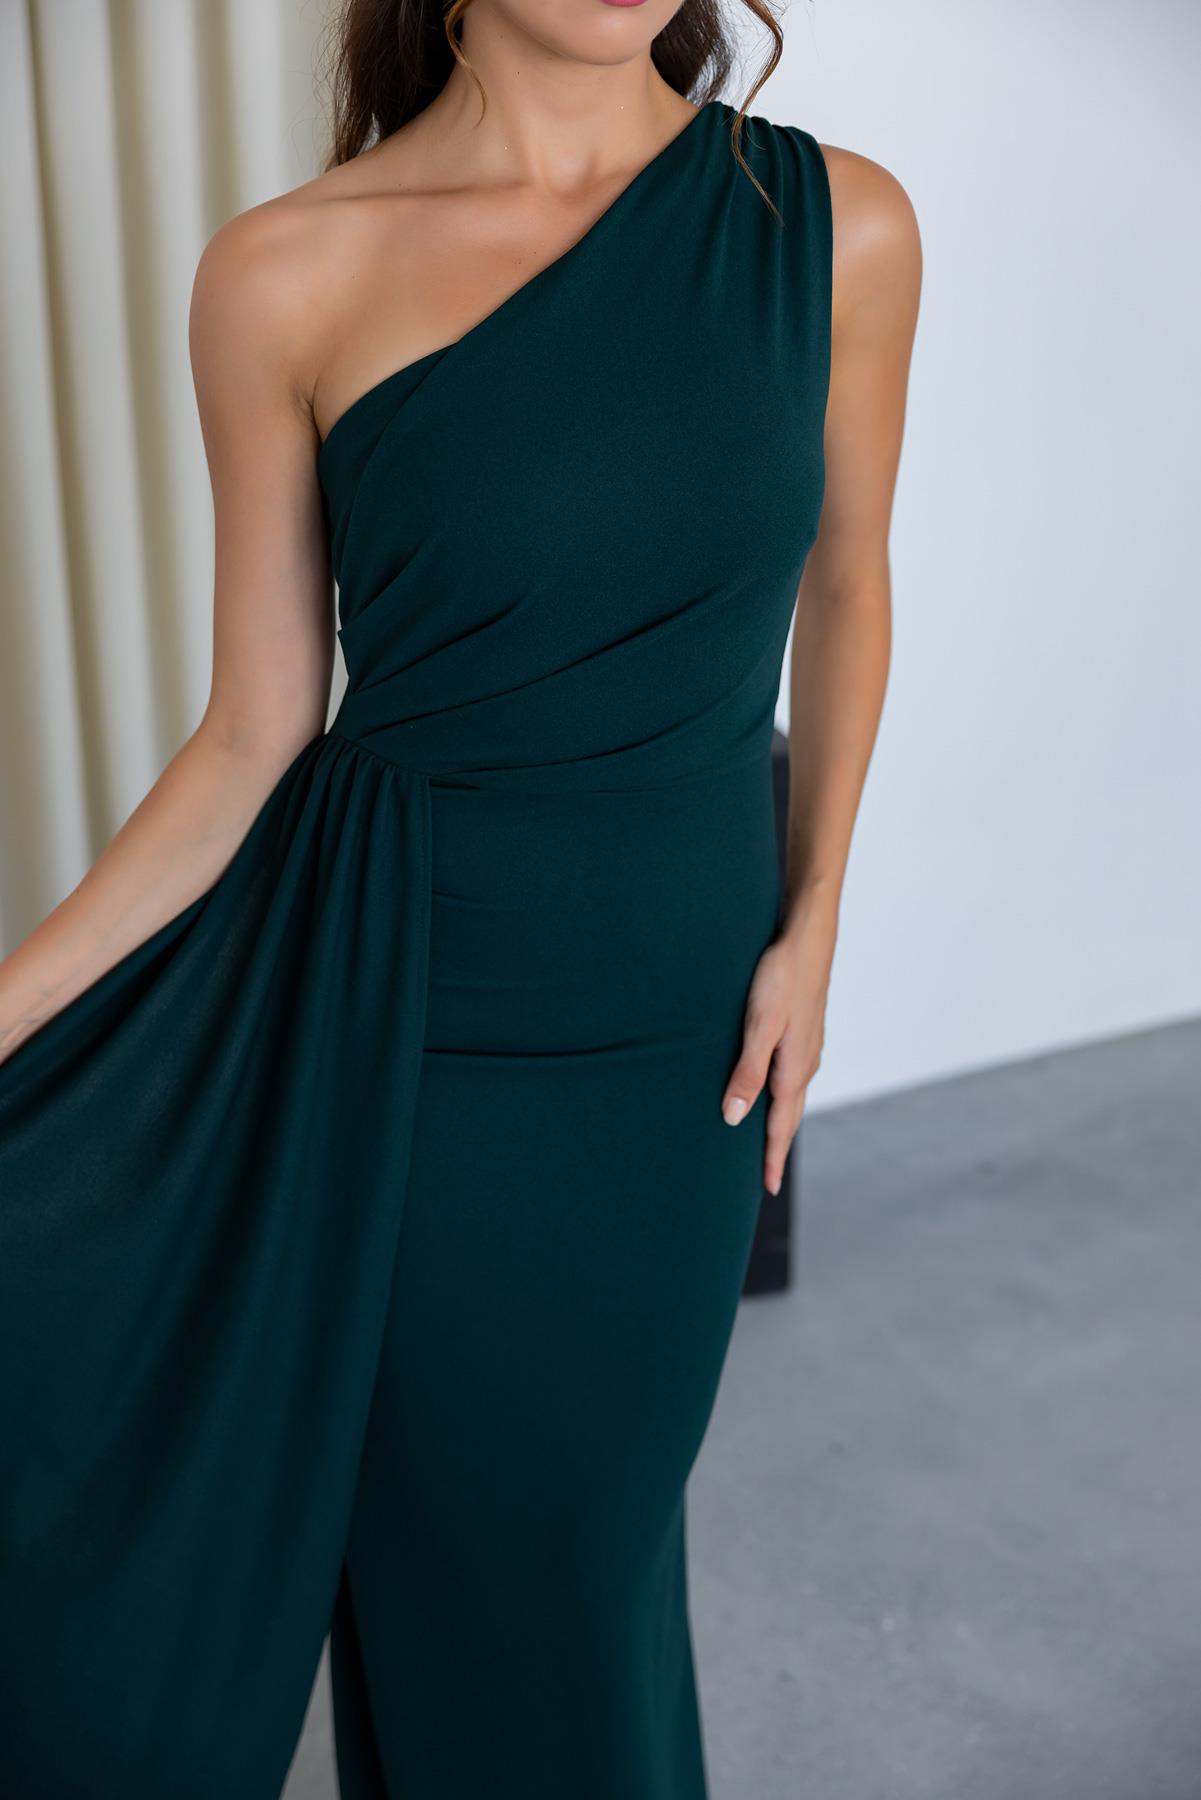 One Shoulder Evening Dress - EMERALD GREEN